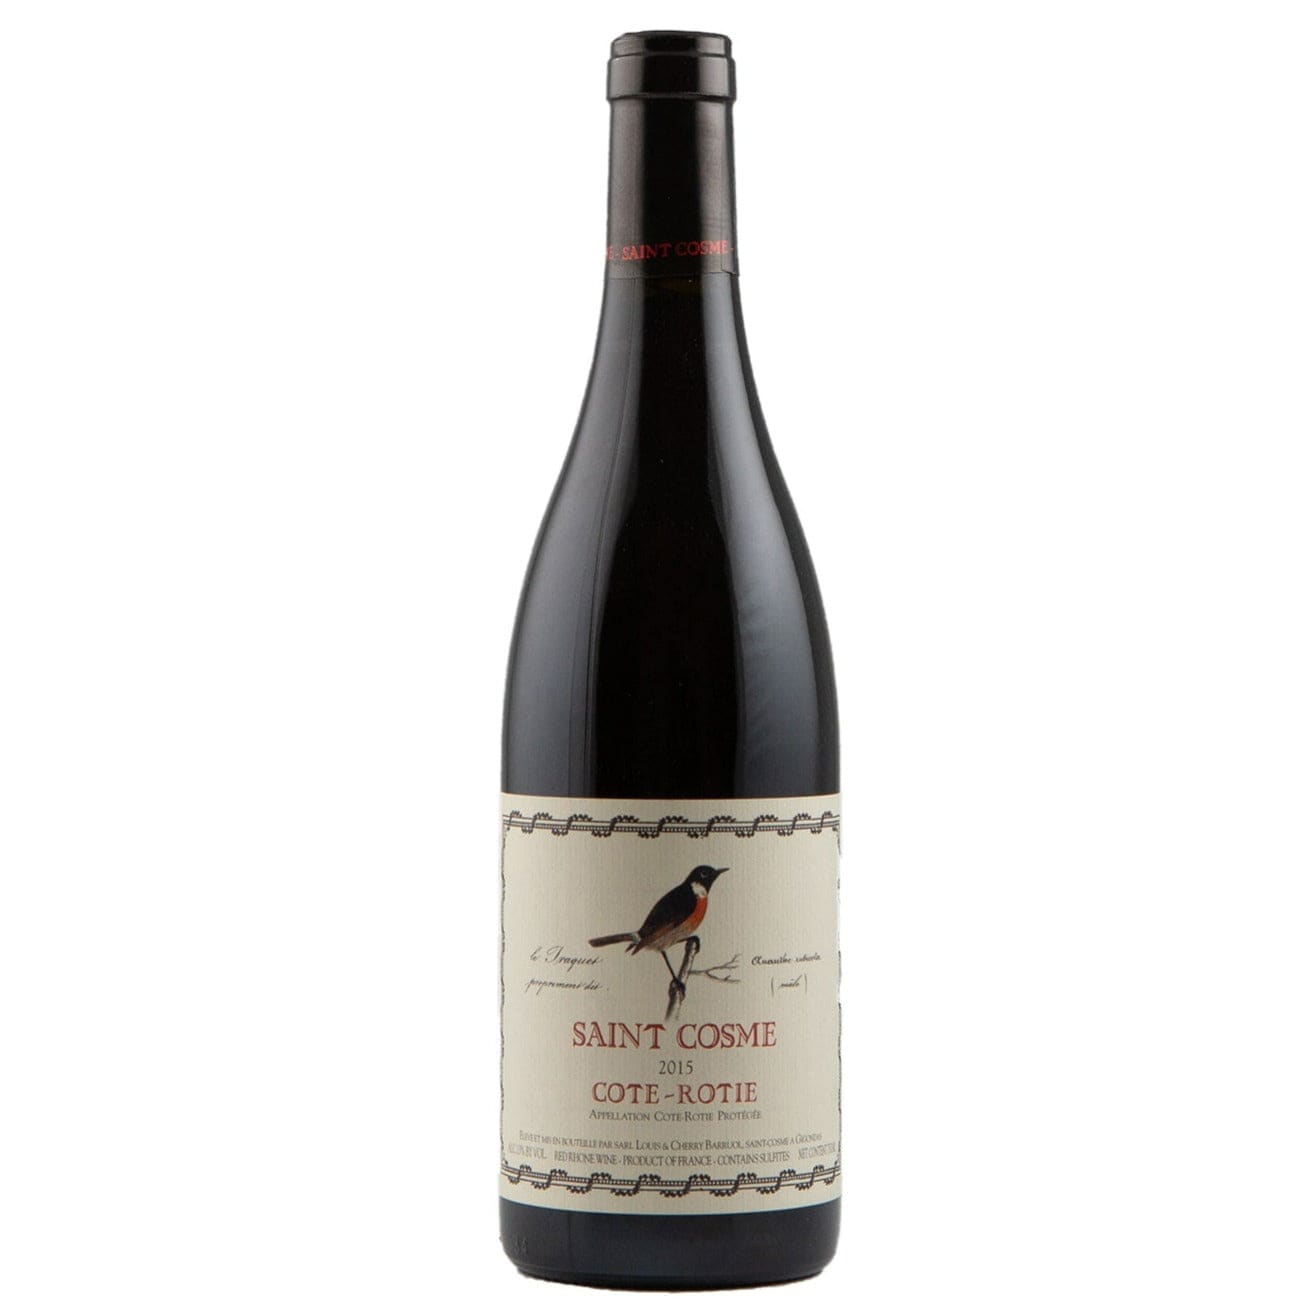 Single bottle of Red wine Ch. de Saint Cosme, Cote Rotie, Cote Rotie, 2015 100% Syrah